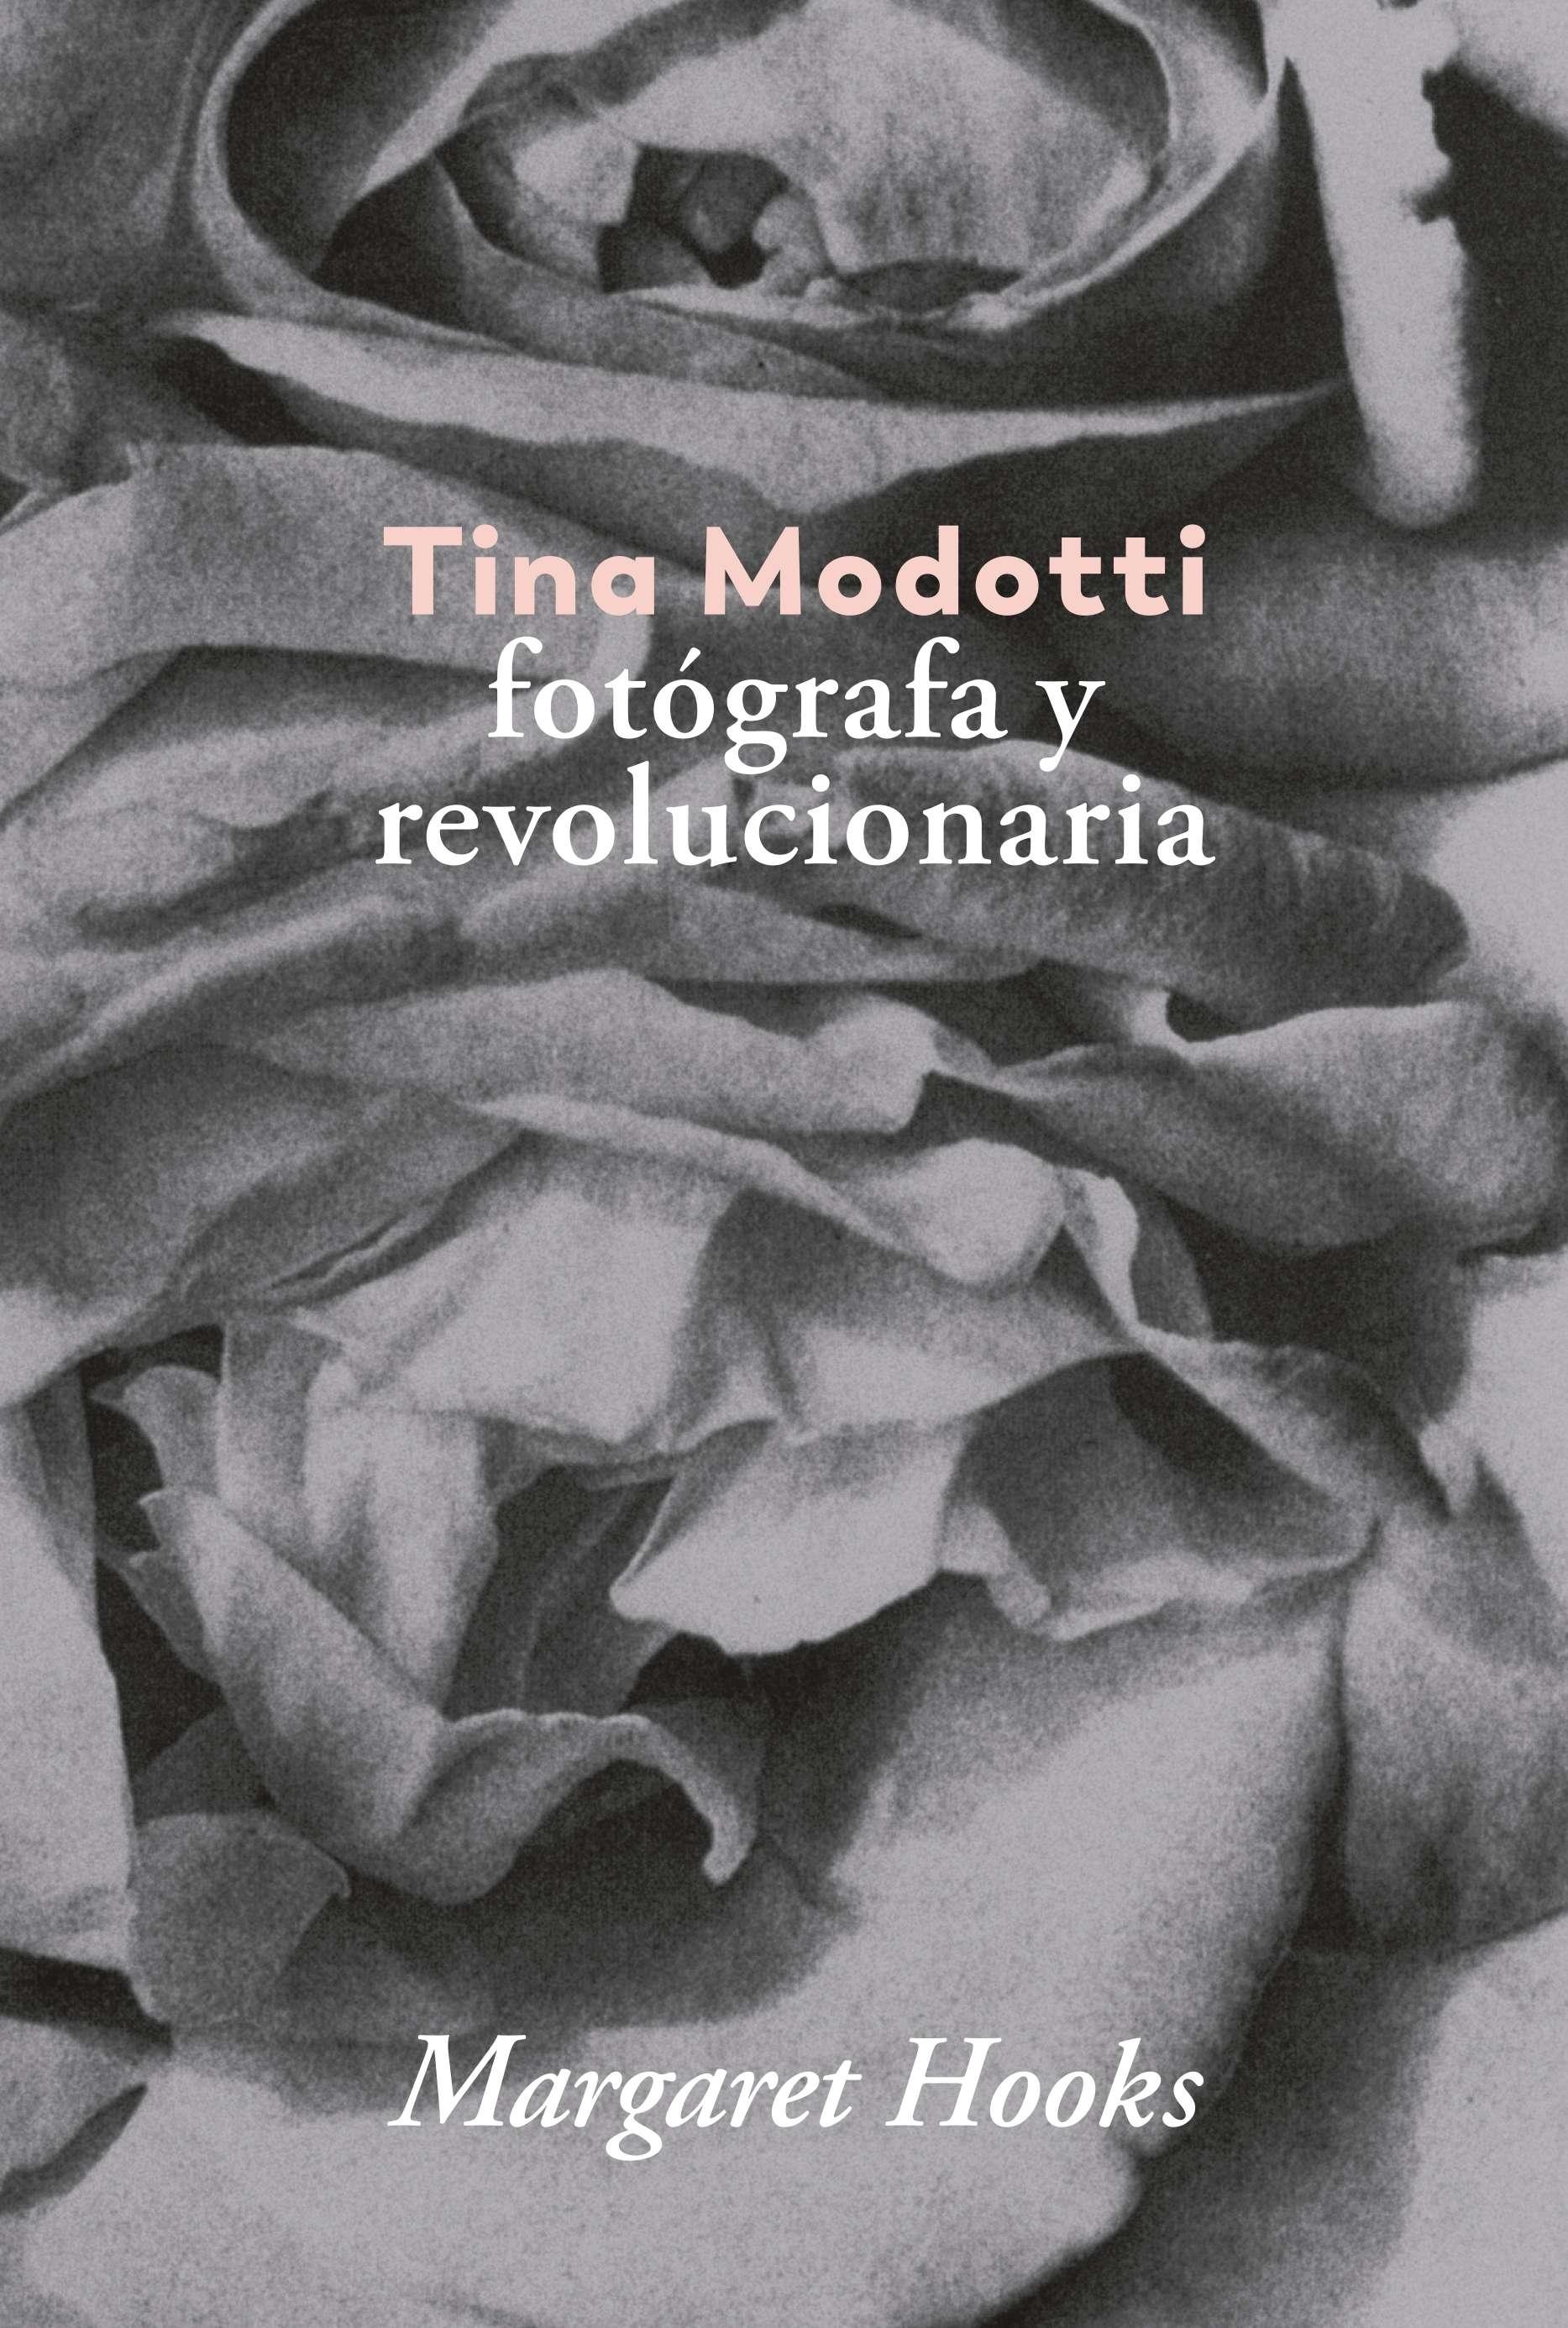 TINA MODOTTI.  FOTOGRAFA Y REVOLUCIONARIA